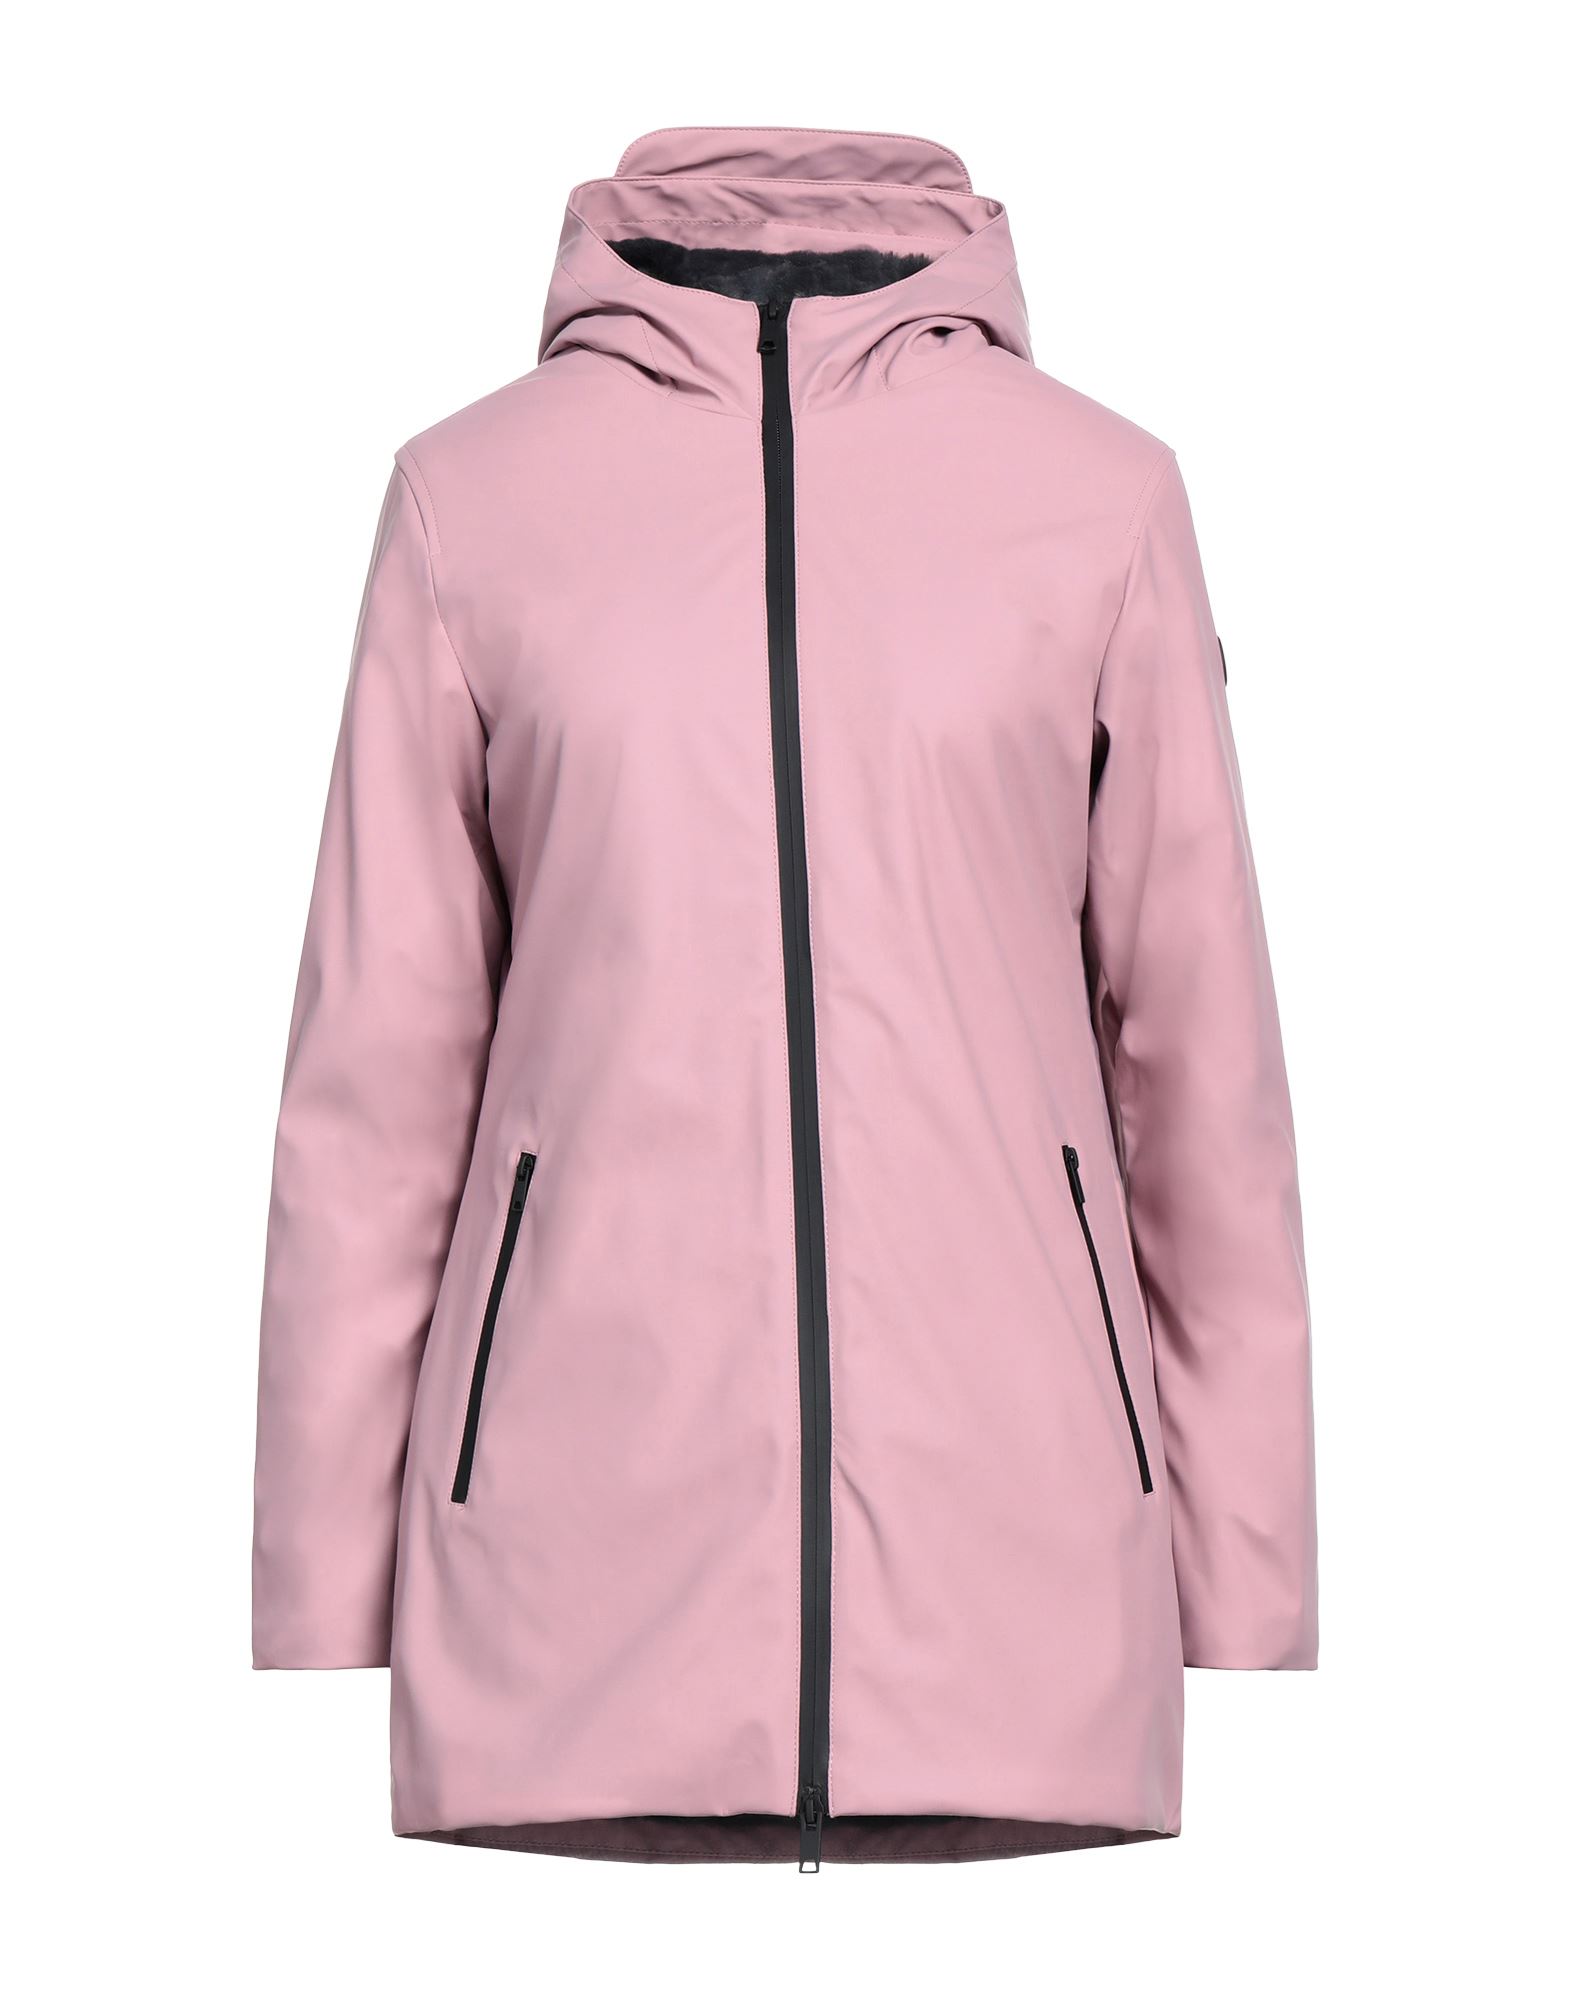 Homeward Clothes Coats In Pink